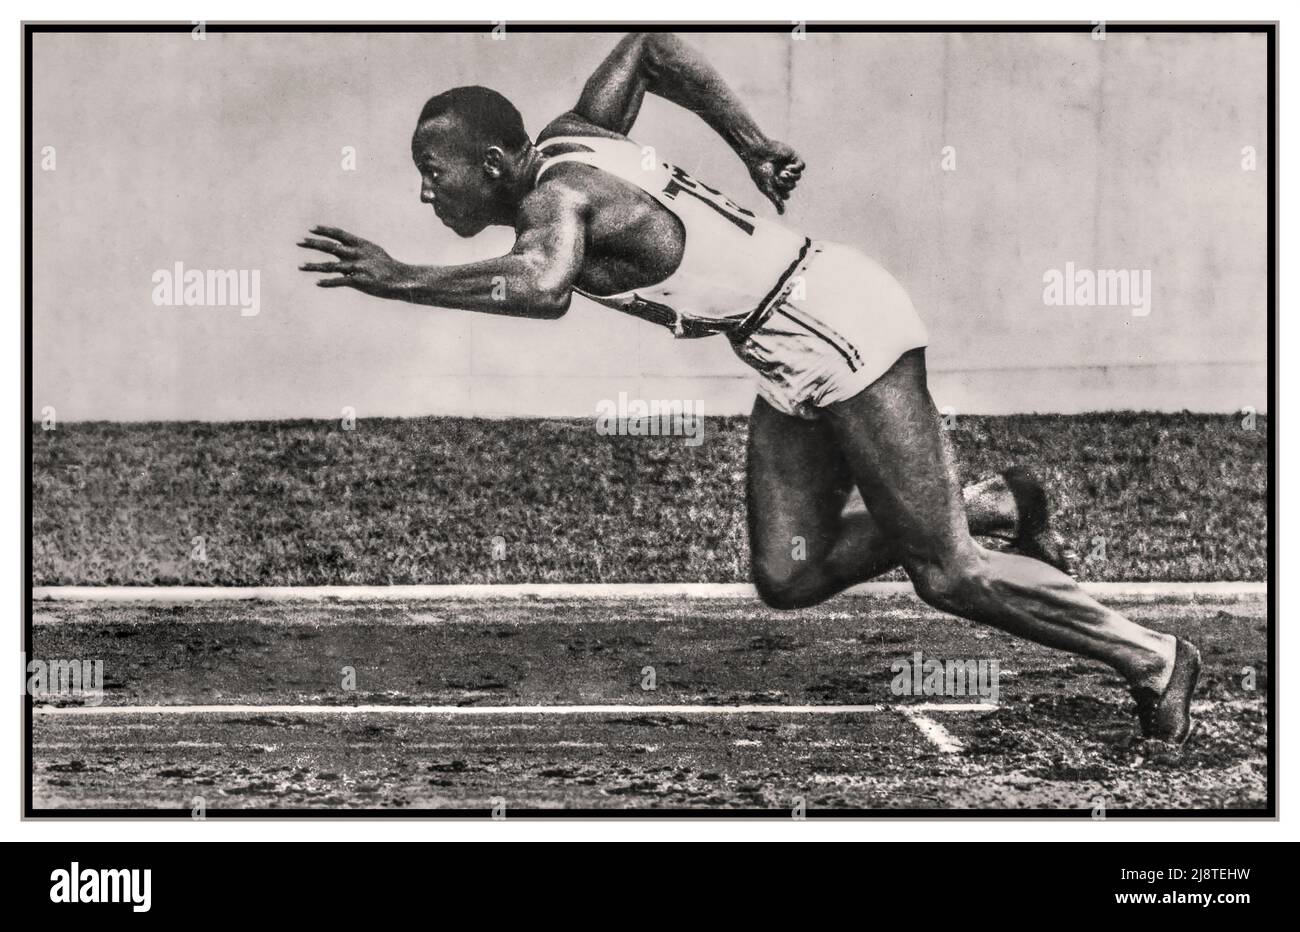 Jesse Owens bei den Olympischen Spielen 1936 Nazi-Deutschland bei den Olympischen Sommerspielen 1936 in Berlin, Deutschland, erlangte er internationalen Ruhm, indem er vier Goldmedaillen gewann: 100 Meter, Weitsprung, 200 Meter und 4 × 100-Meter-Staffel. Er war der erfolgreichste Athlet bei den Spielen und wurde als schwarzer Amerikaner mit der „eigenhändigen Niederschlagung von Hitlers Mythos von der arischen Vorherrschaft“ in Verbindung gebracht. Offizielle Olympia-Postkarte, Reichssportverlag, Berliner Sieger von vier Goldmedaillen, Berlin Nazi-Deutschland. Stockfoto